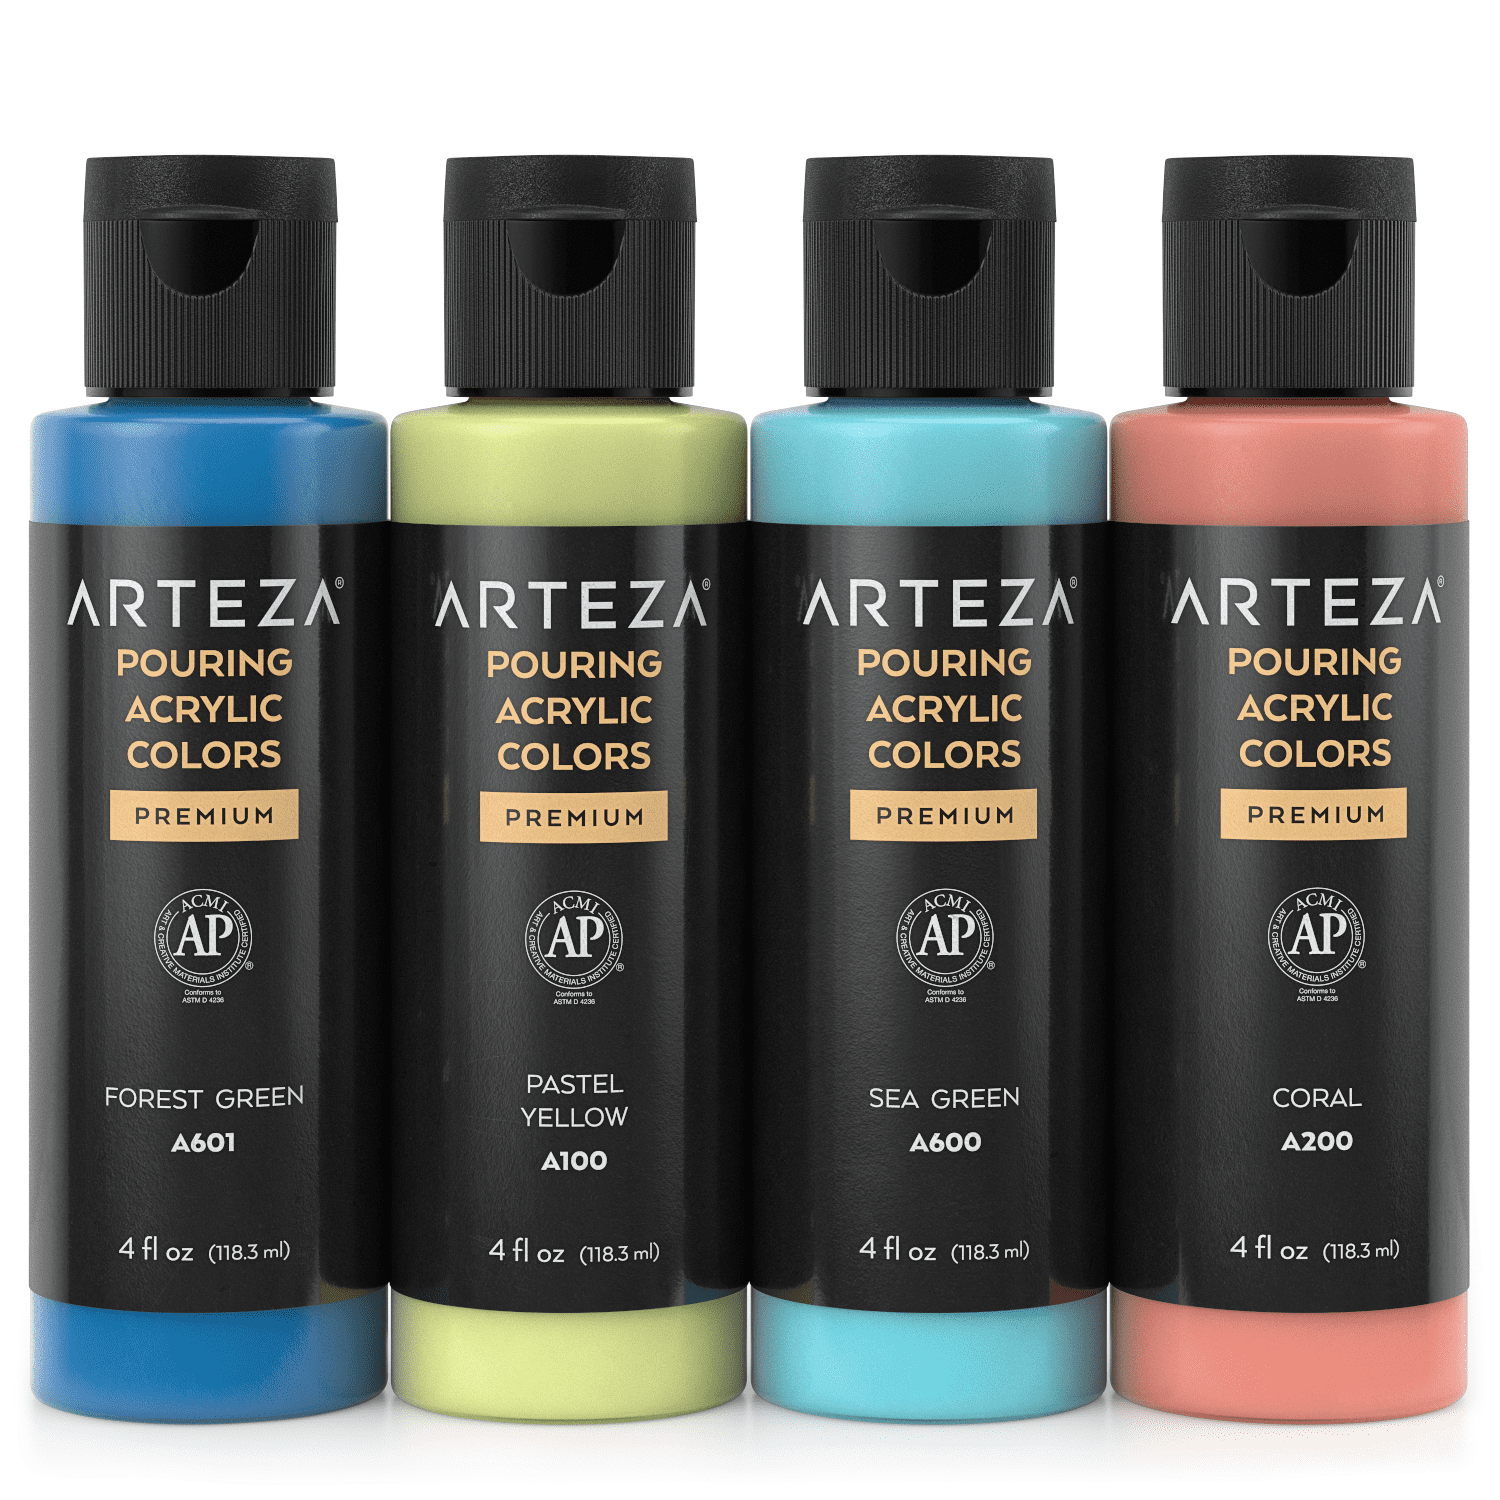 Arteza Acrylic Pouring Paint Kit, 120 ml Bottle Set, Spring Colors - 4 Pack  